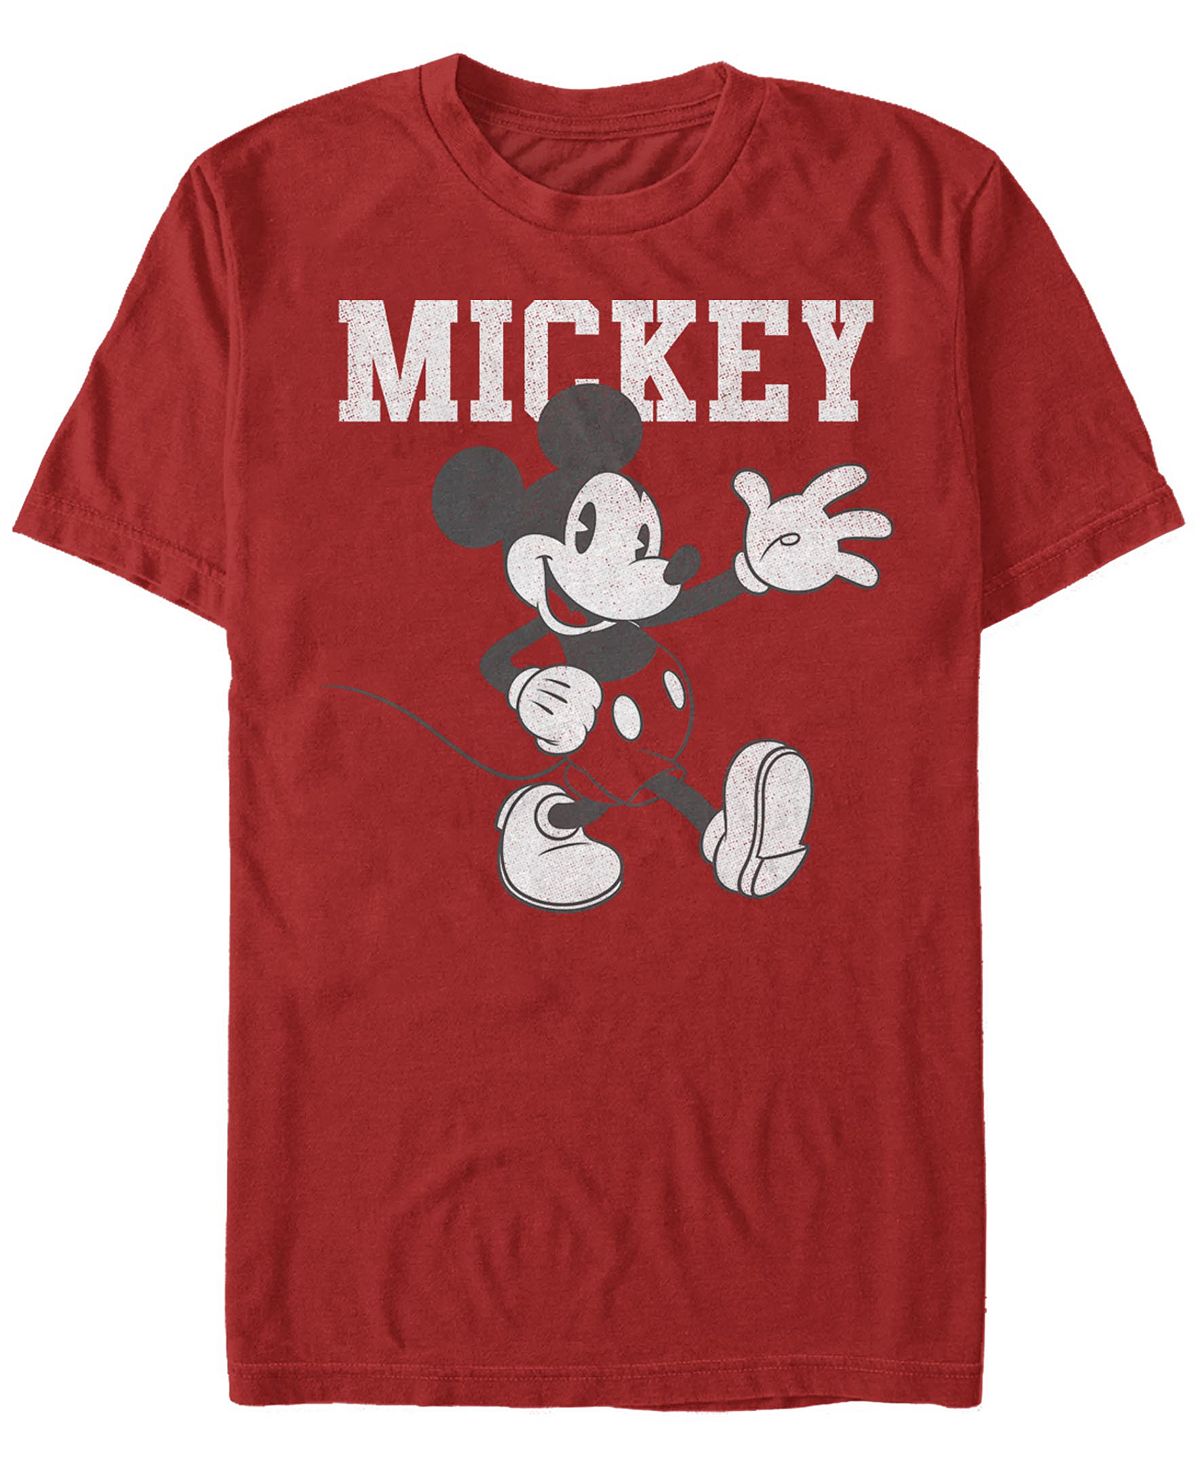 Мужская футболка с круглым вырезом с короткими рукавами simply mickey Fifth Sun, красный мужская футболка с круглым вырезом с короткими рукавами mickey poly fifth sun